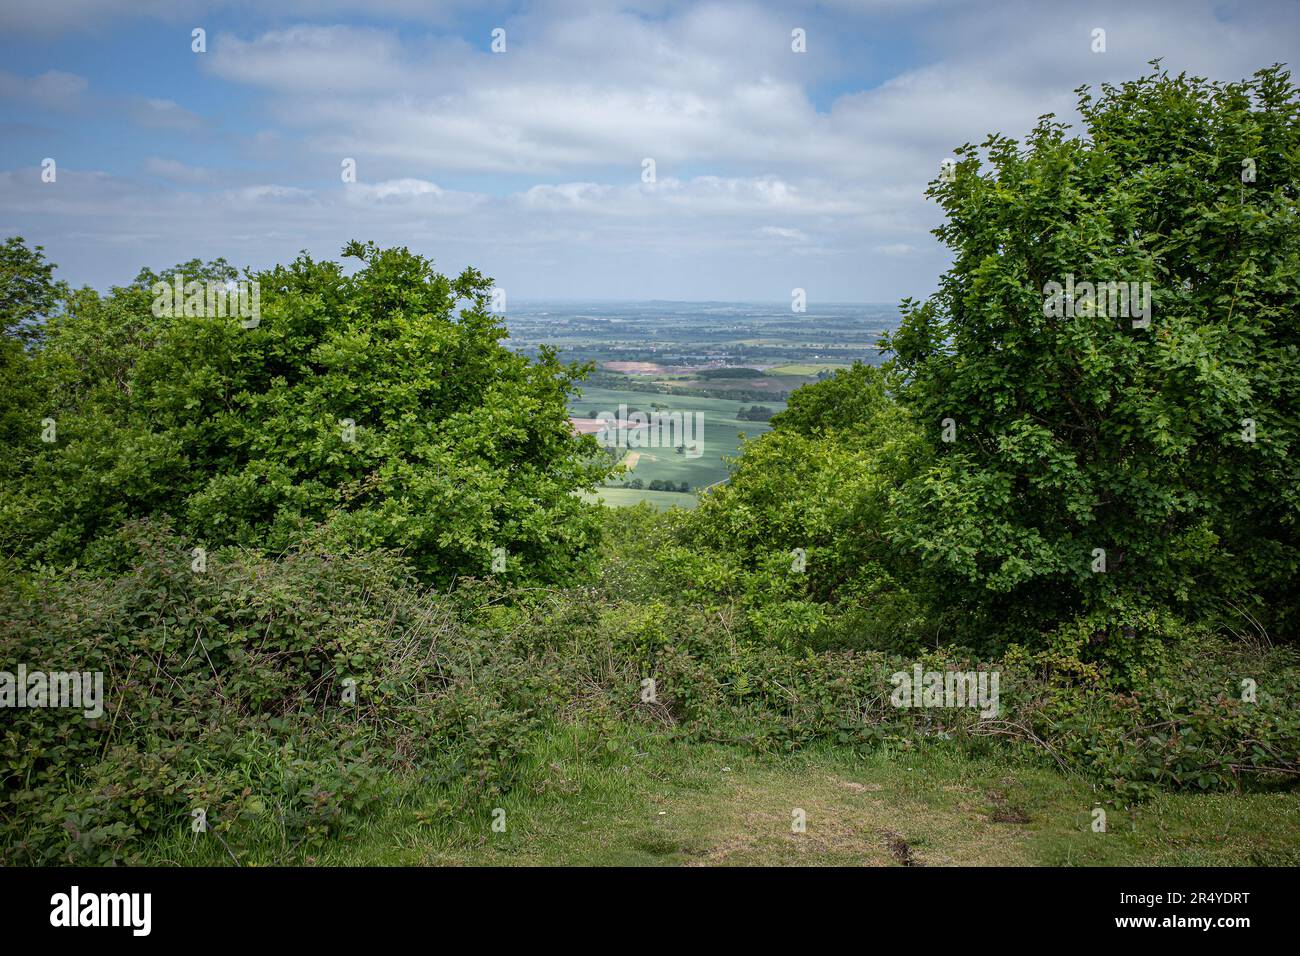 Blick vom Wrekin, einem Hügel in Shropshire mit wunderbarer Aussicht auf die umliegende Landschaft. Konzept von Bewegung, Wohlbefinden oder psychischer Gesundheit. Stockfoto